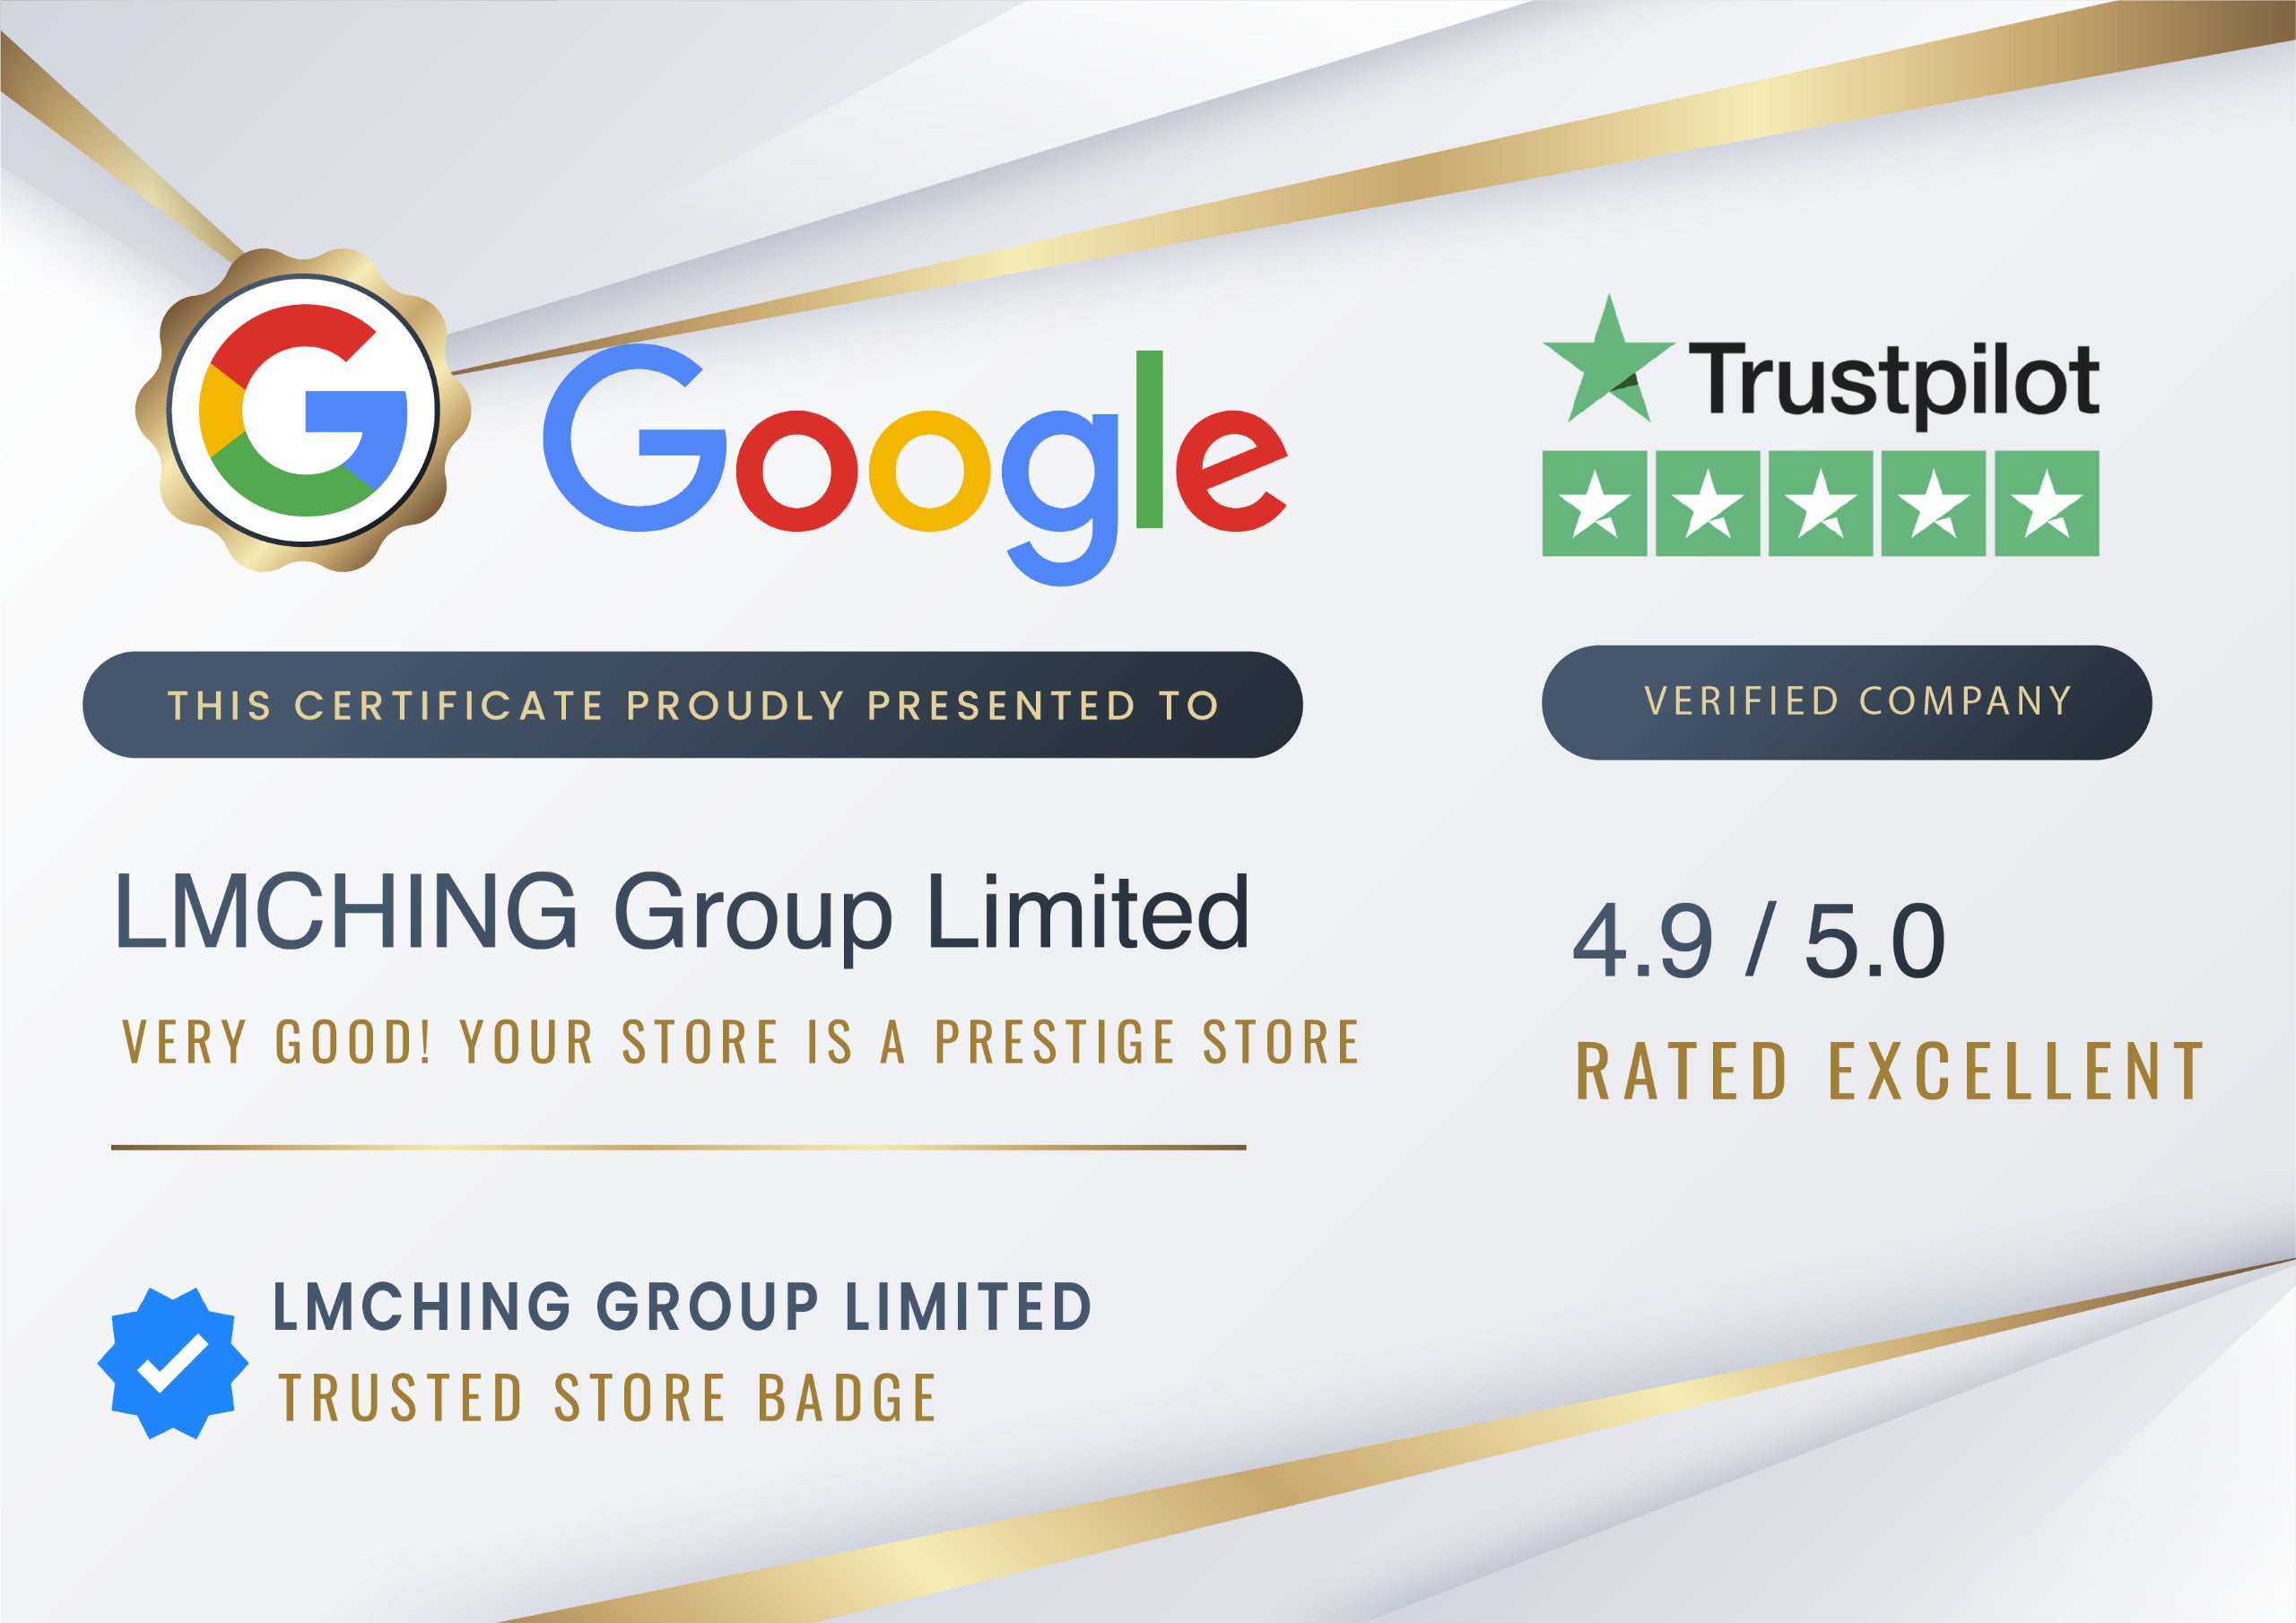 ให้ความสำคัญกับลูกค้าเป็นอันดับแรก - รับป้ายร้านค้าคุณภาพสูงสุดของ Google และ TrustPilot 4.9/5 ดาว